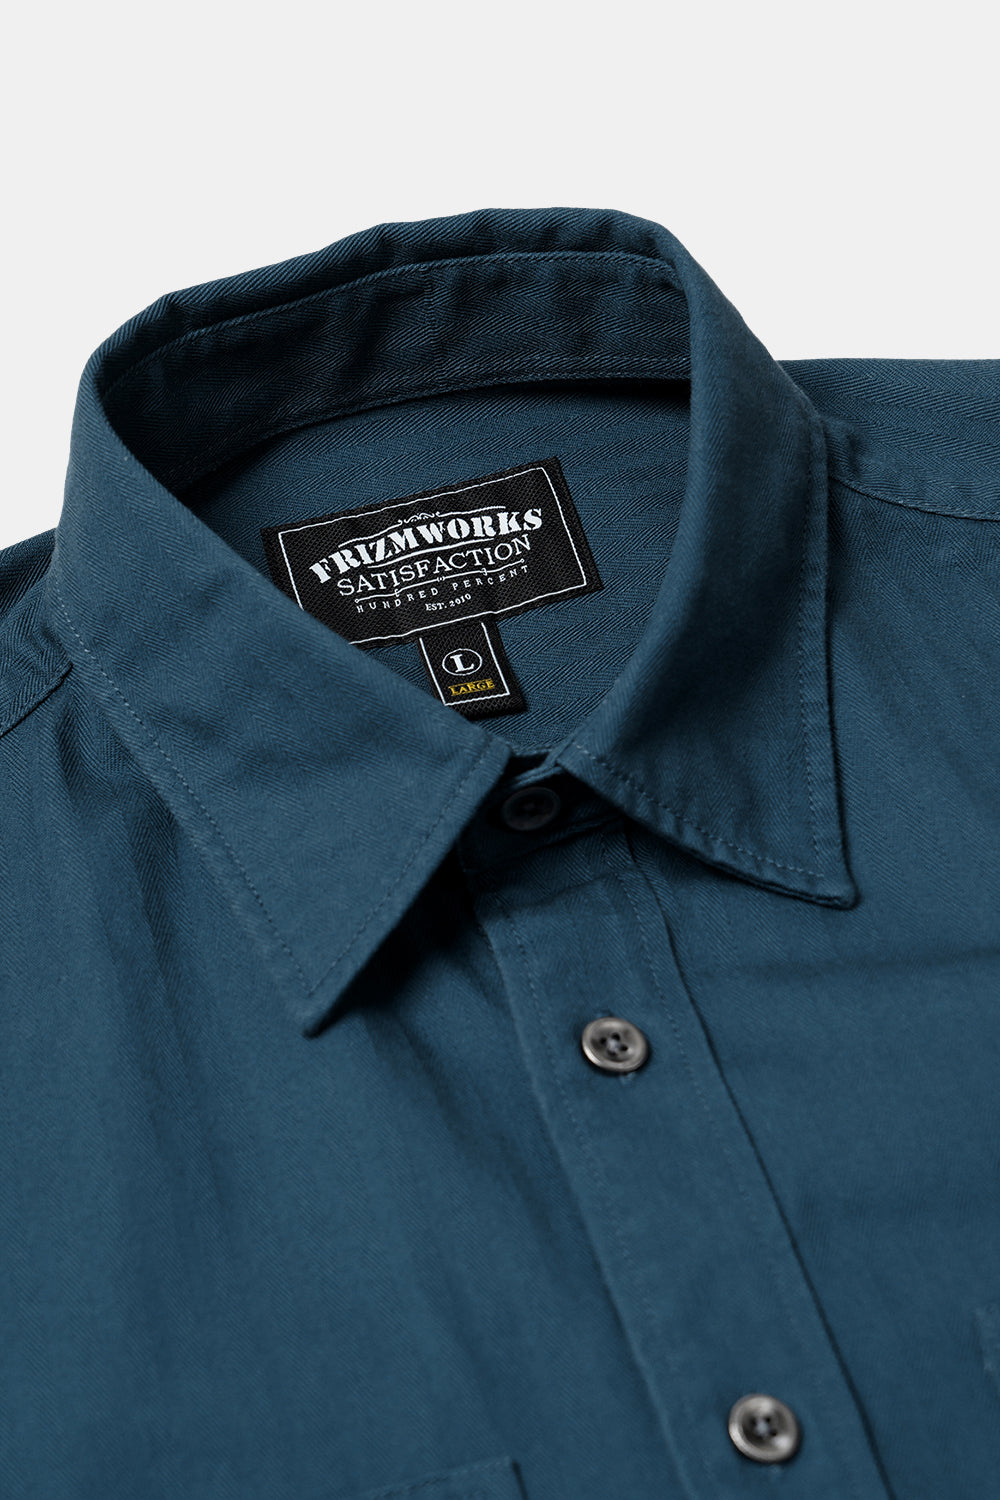 Frizmworks HBT Carpenter Pocket Work Shirt Jacket (vintage blå)